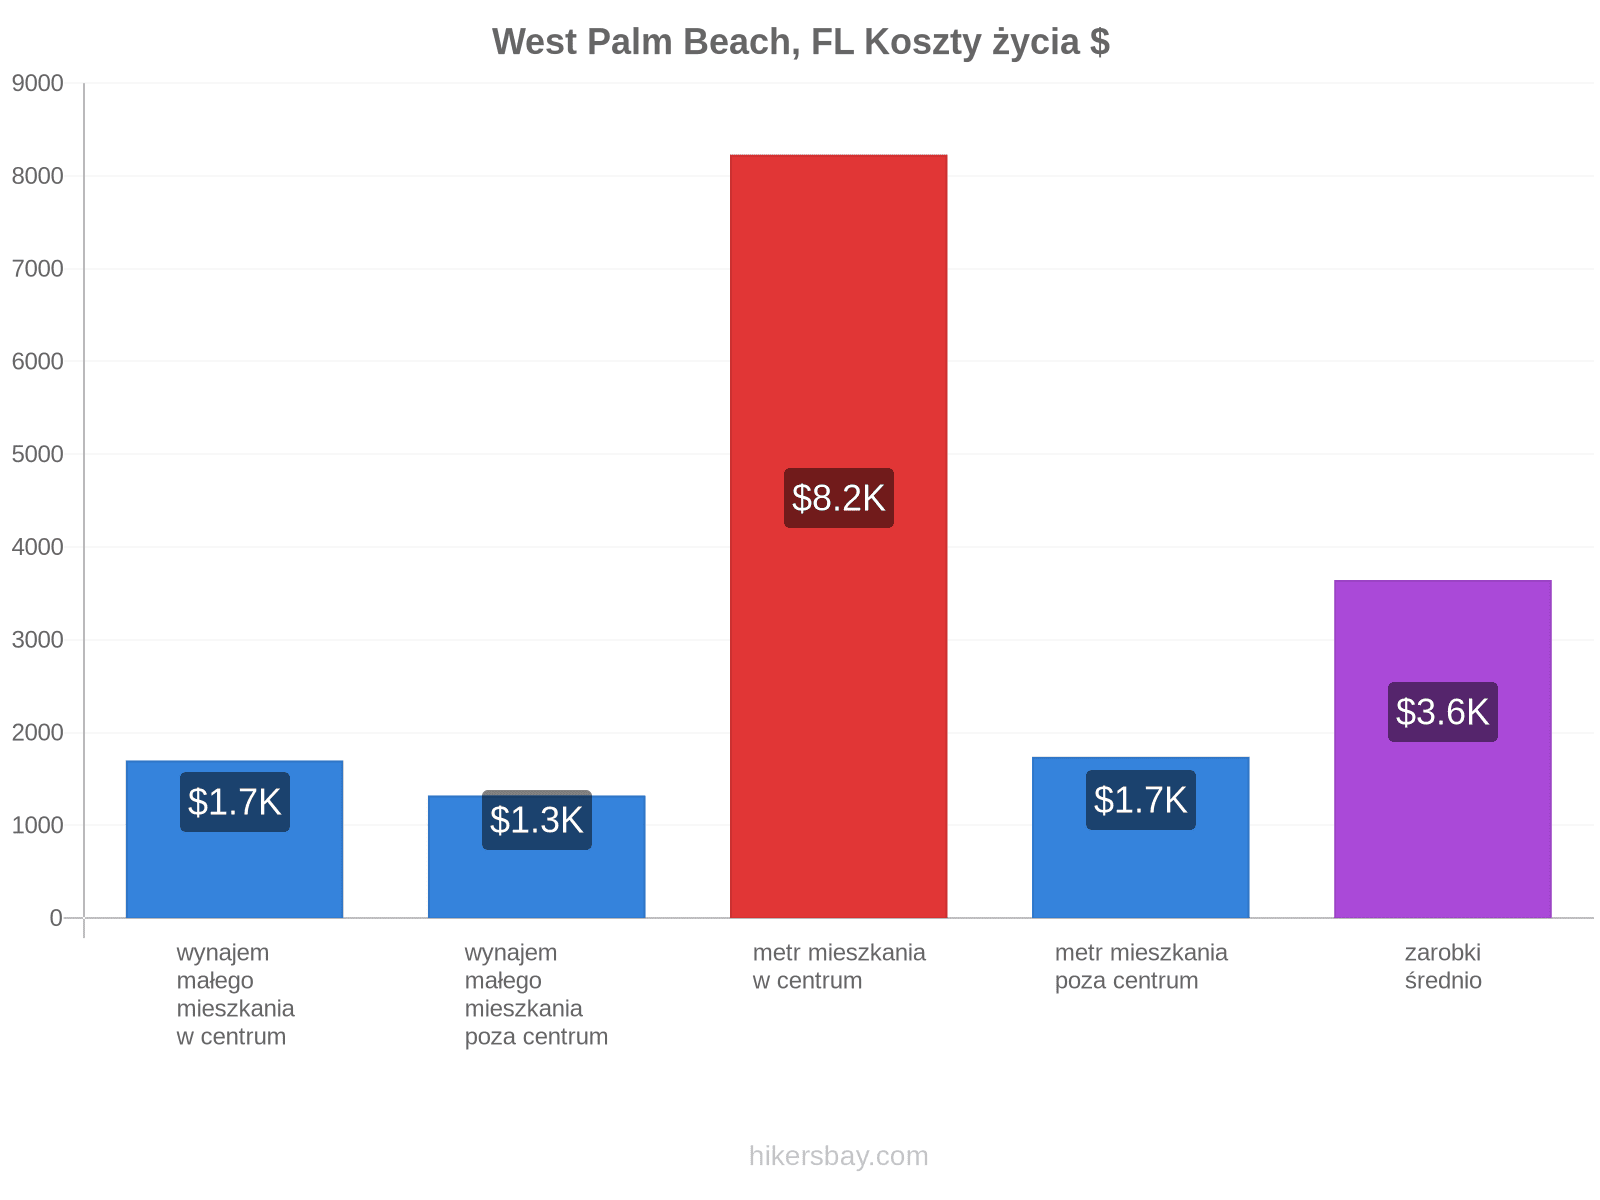 West Palm Beach, FL koszty życia hikersbay.com